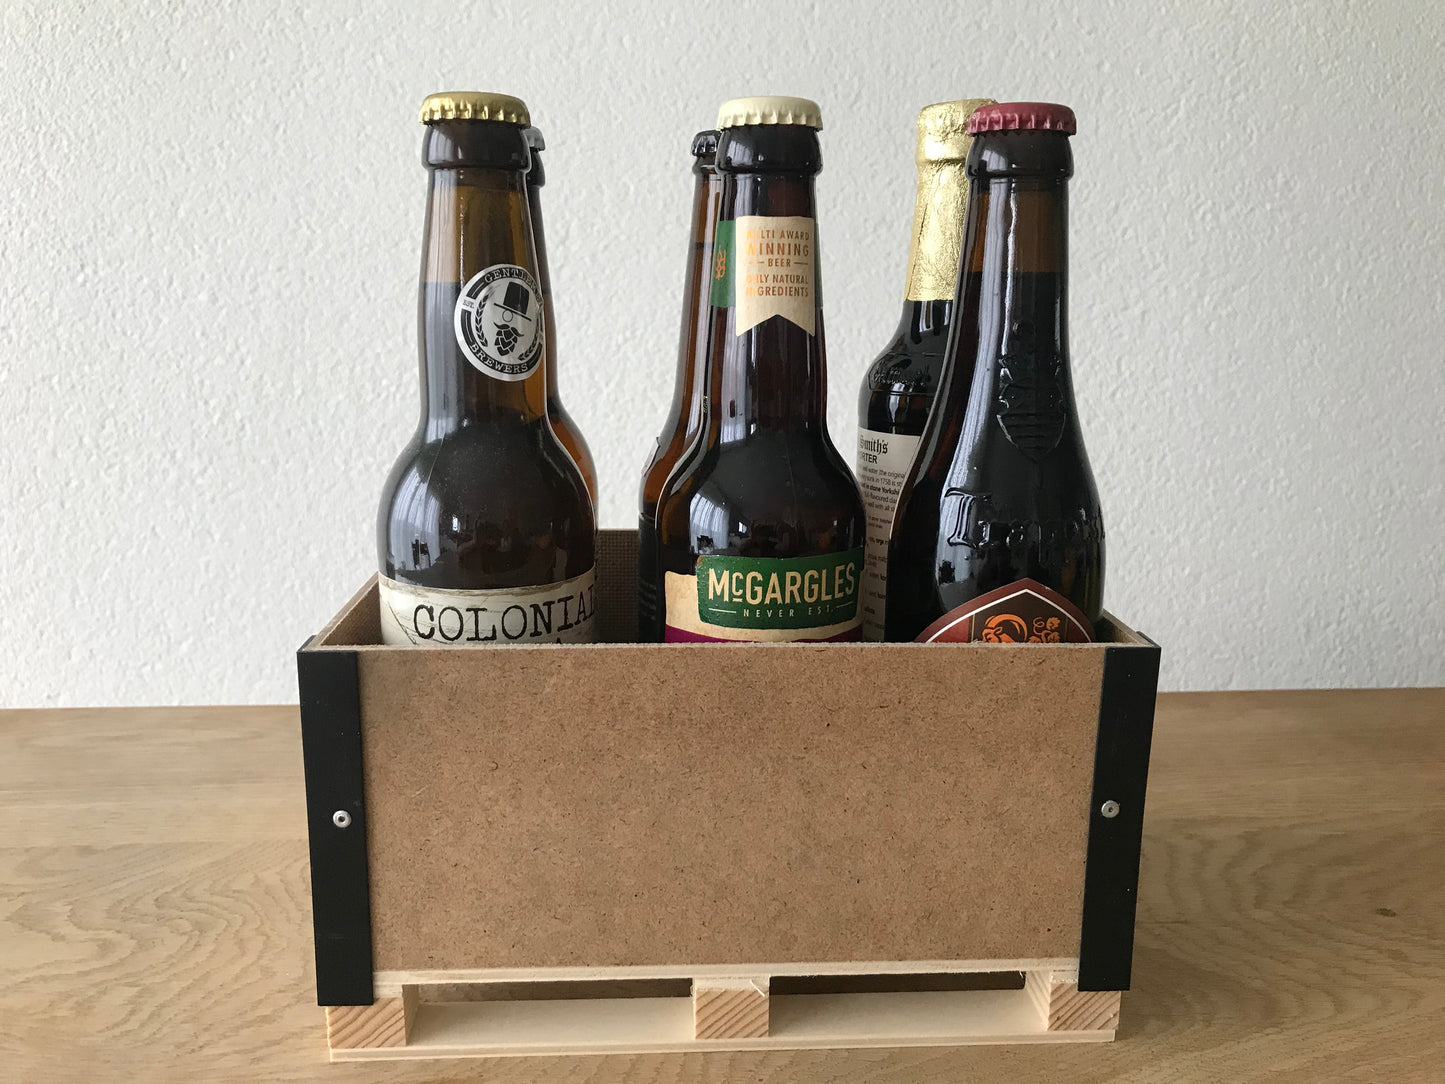 Kleines Harassli aus Holz mit 6 internationalen Craft Bier (Version 0.33 Liter)